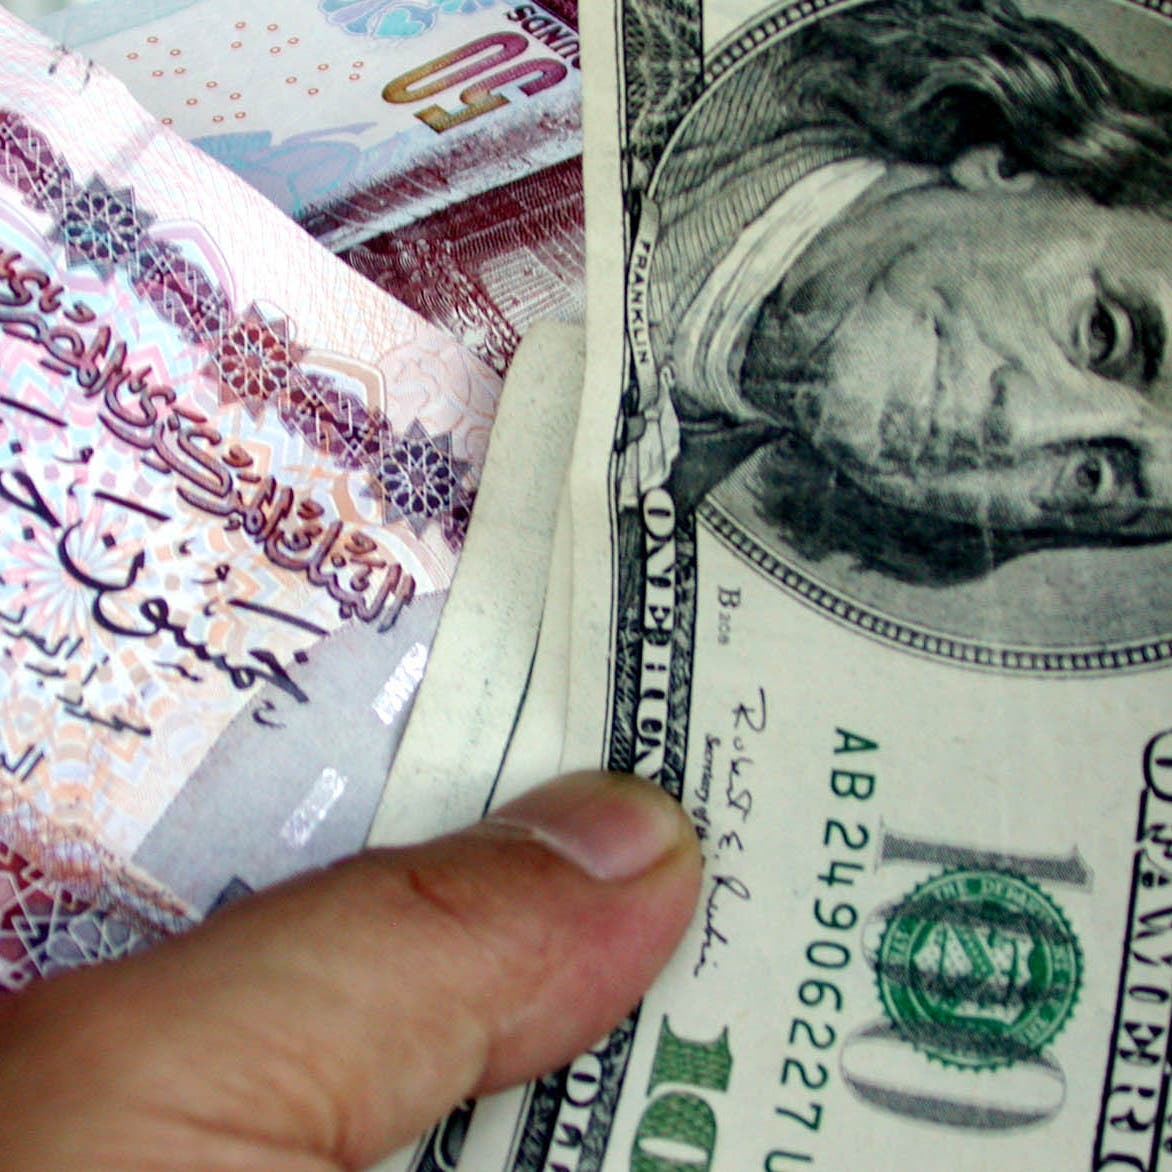 سعر الجنيه في مصر يواصل الصعود أمام الدولار.. وهذه مكاسبه